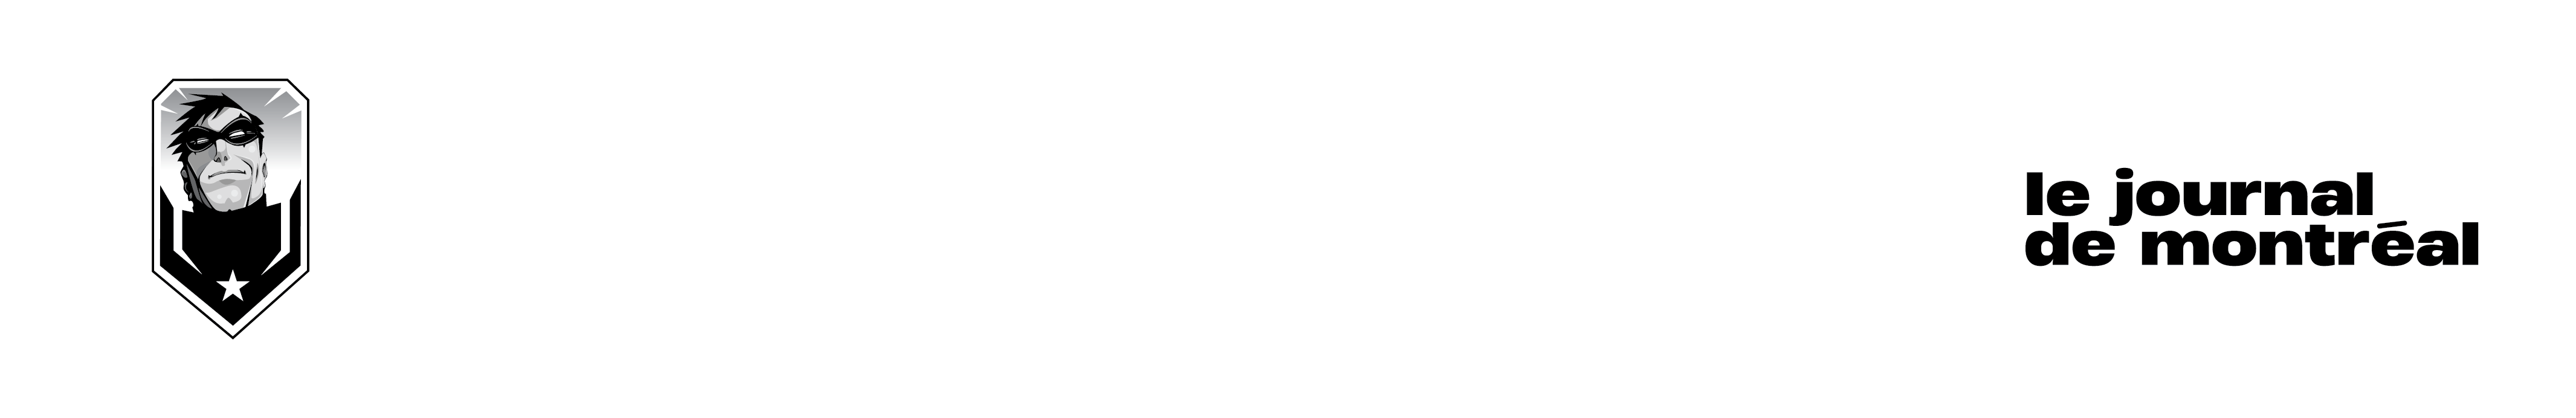 MCCHE-2021-Weapons Sale Agreement - Comiccon de Montréal